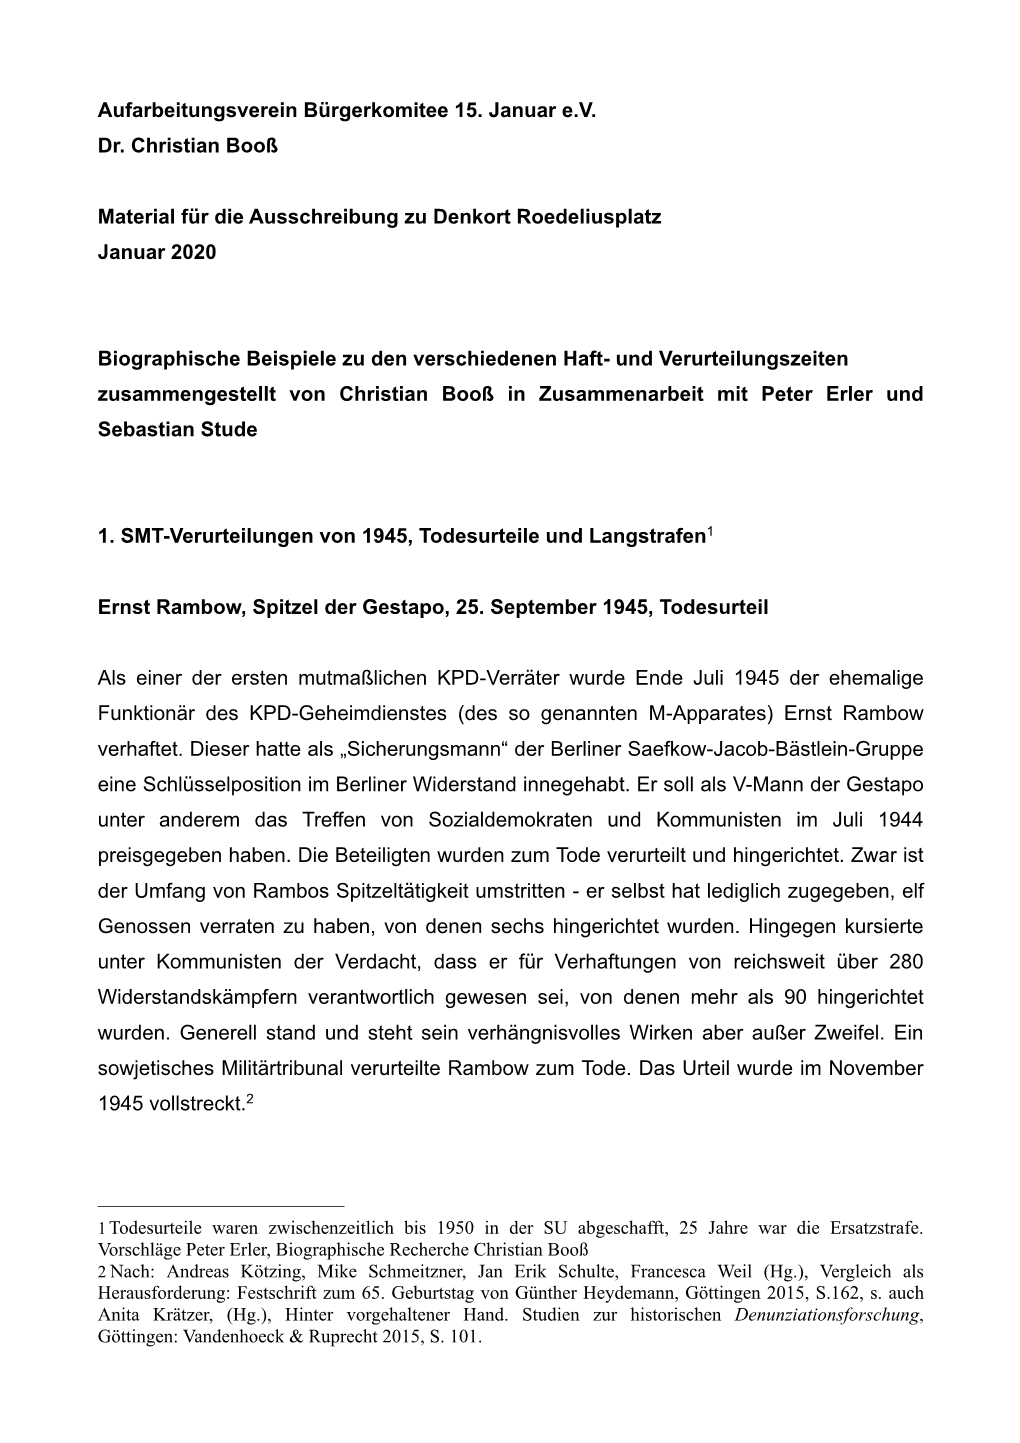 Aufarbeitungsverein Bürgerkomitee 15. Januar E.V. Dr. Christian Booß Material Für Die Ausschreibung Zu Denkort Roedeliusplatz